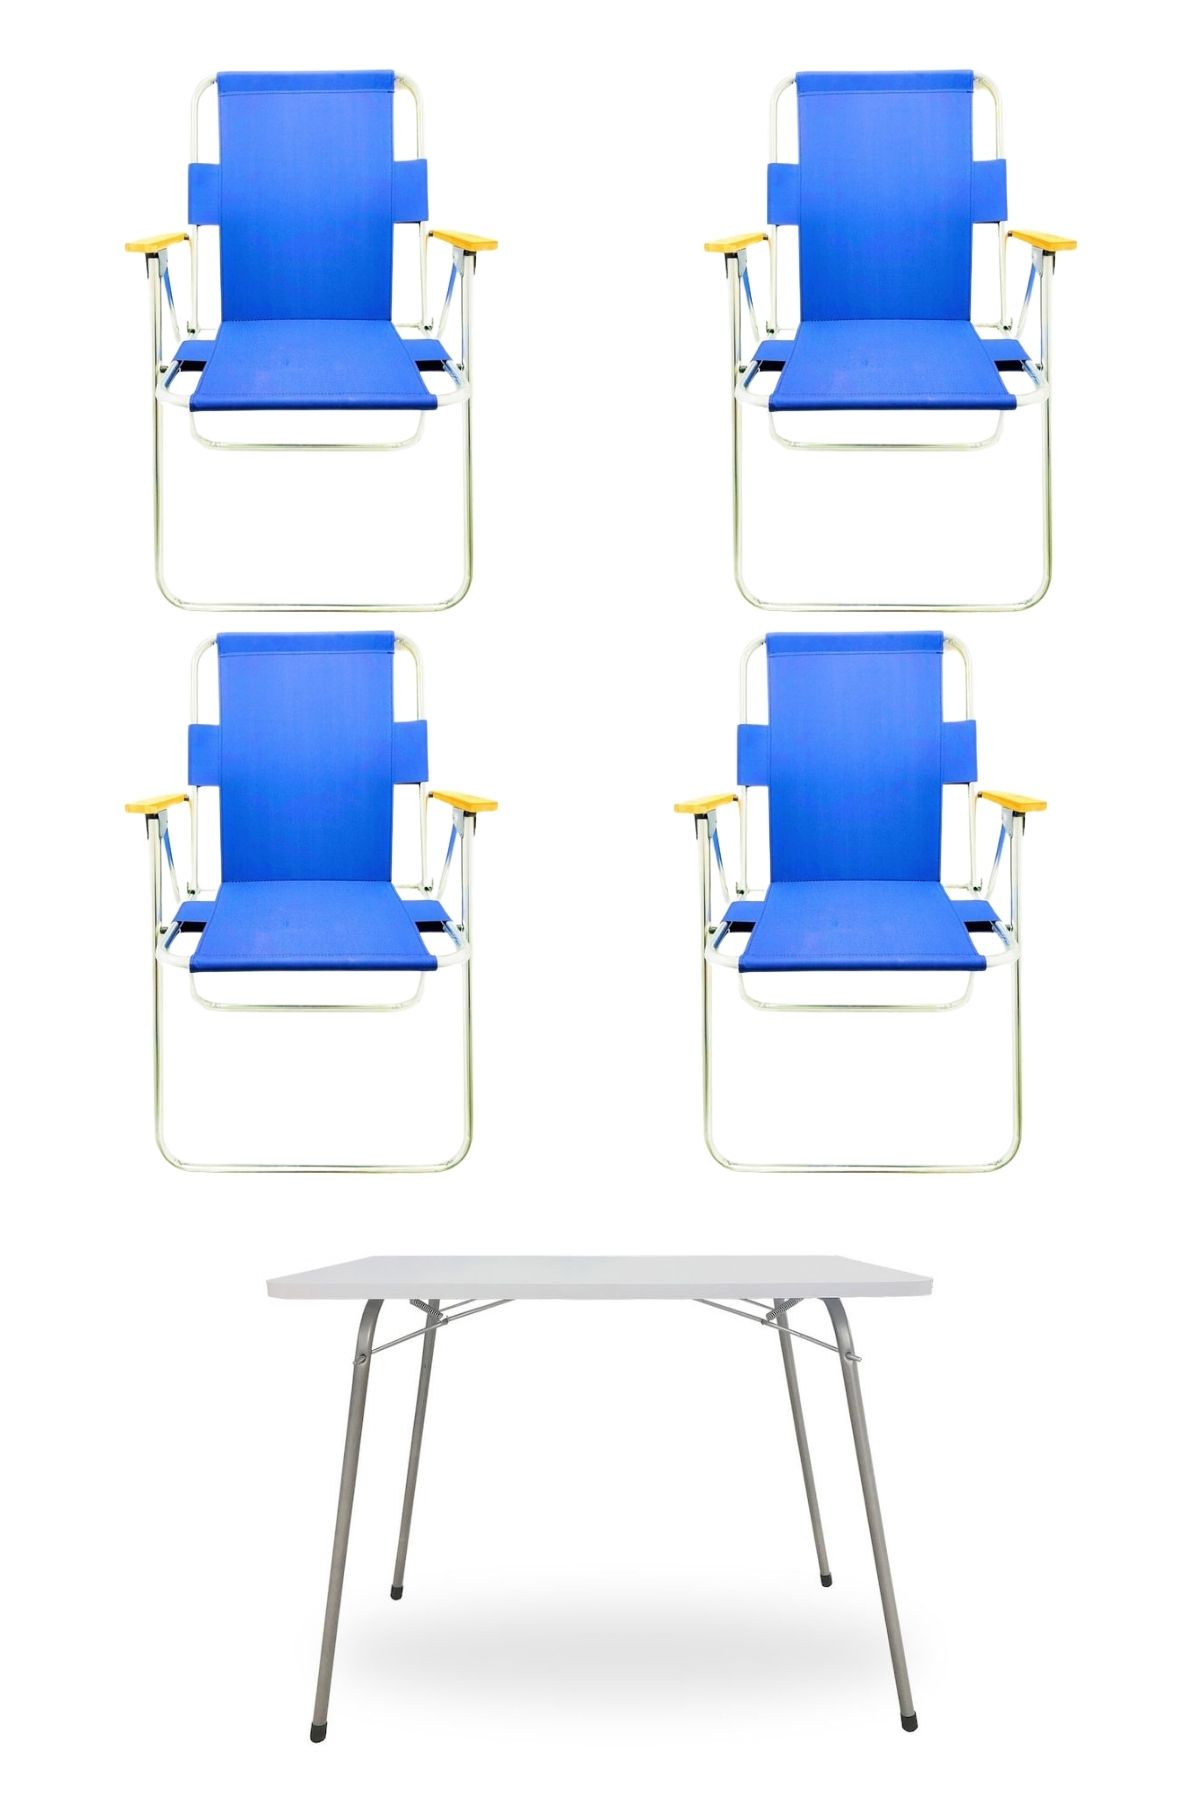 Tedarikcenter 4 Adet Ahşap Kollu Katlanır Kamp Sandalyesi Mavi Ve 1 Adet 60x80 cm Katlanır Masa